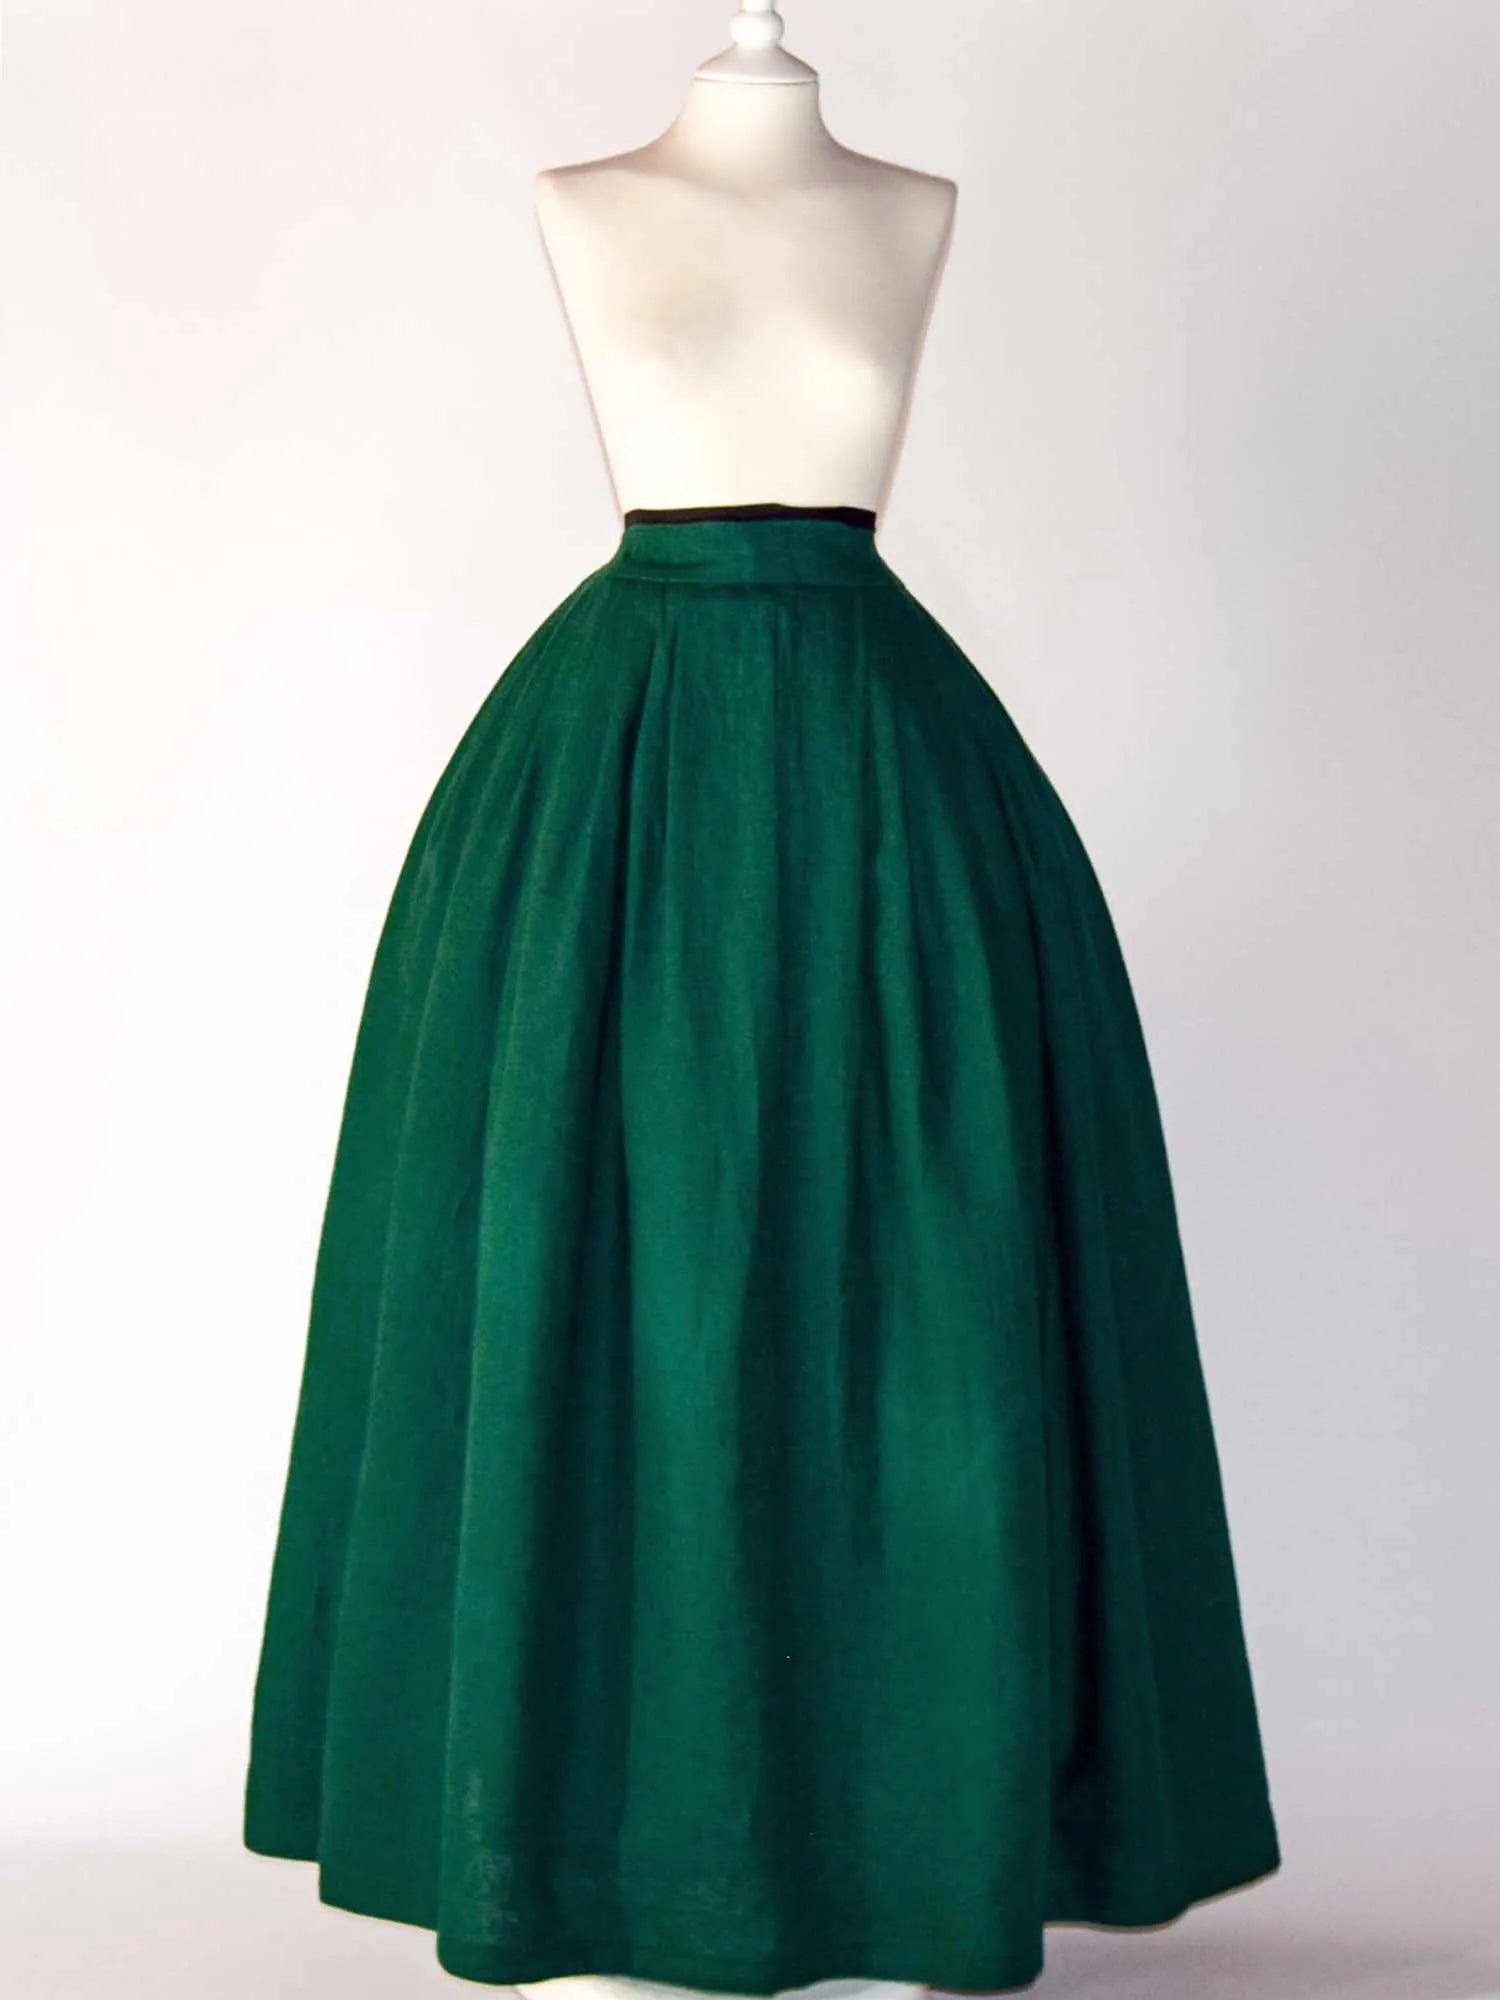 HELOISE, Historical Skirt in Dark Green Linen - Atelier Serraspina